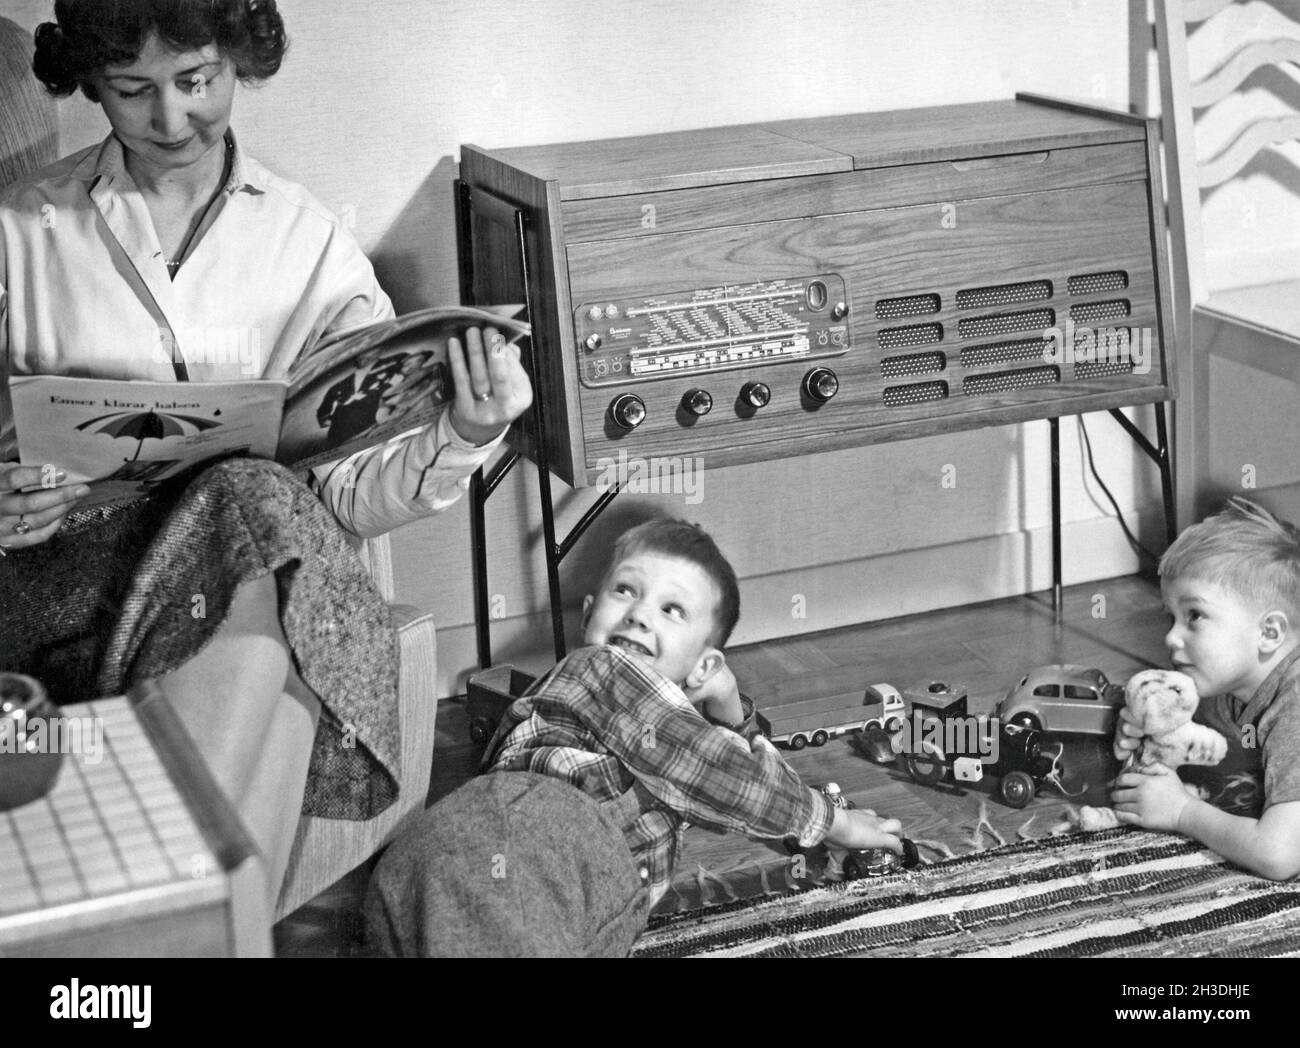 In den 1950er Jahren. Eine Mutter wird in ihrem Haus beim Lesen einer Zeitschrift gesehen, während ihre Söhne mit Spielzeugautos auf dem Boden spielen. Ein typischer Radio-Recordplayer der 1950er Jahre mit einem Holzschrank ist zu sehen. Schweden 1957 Stockfoto